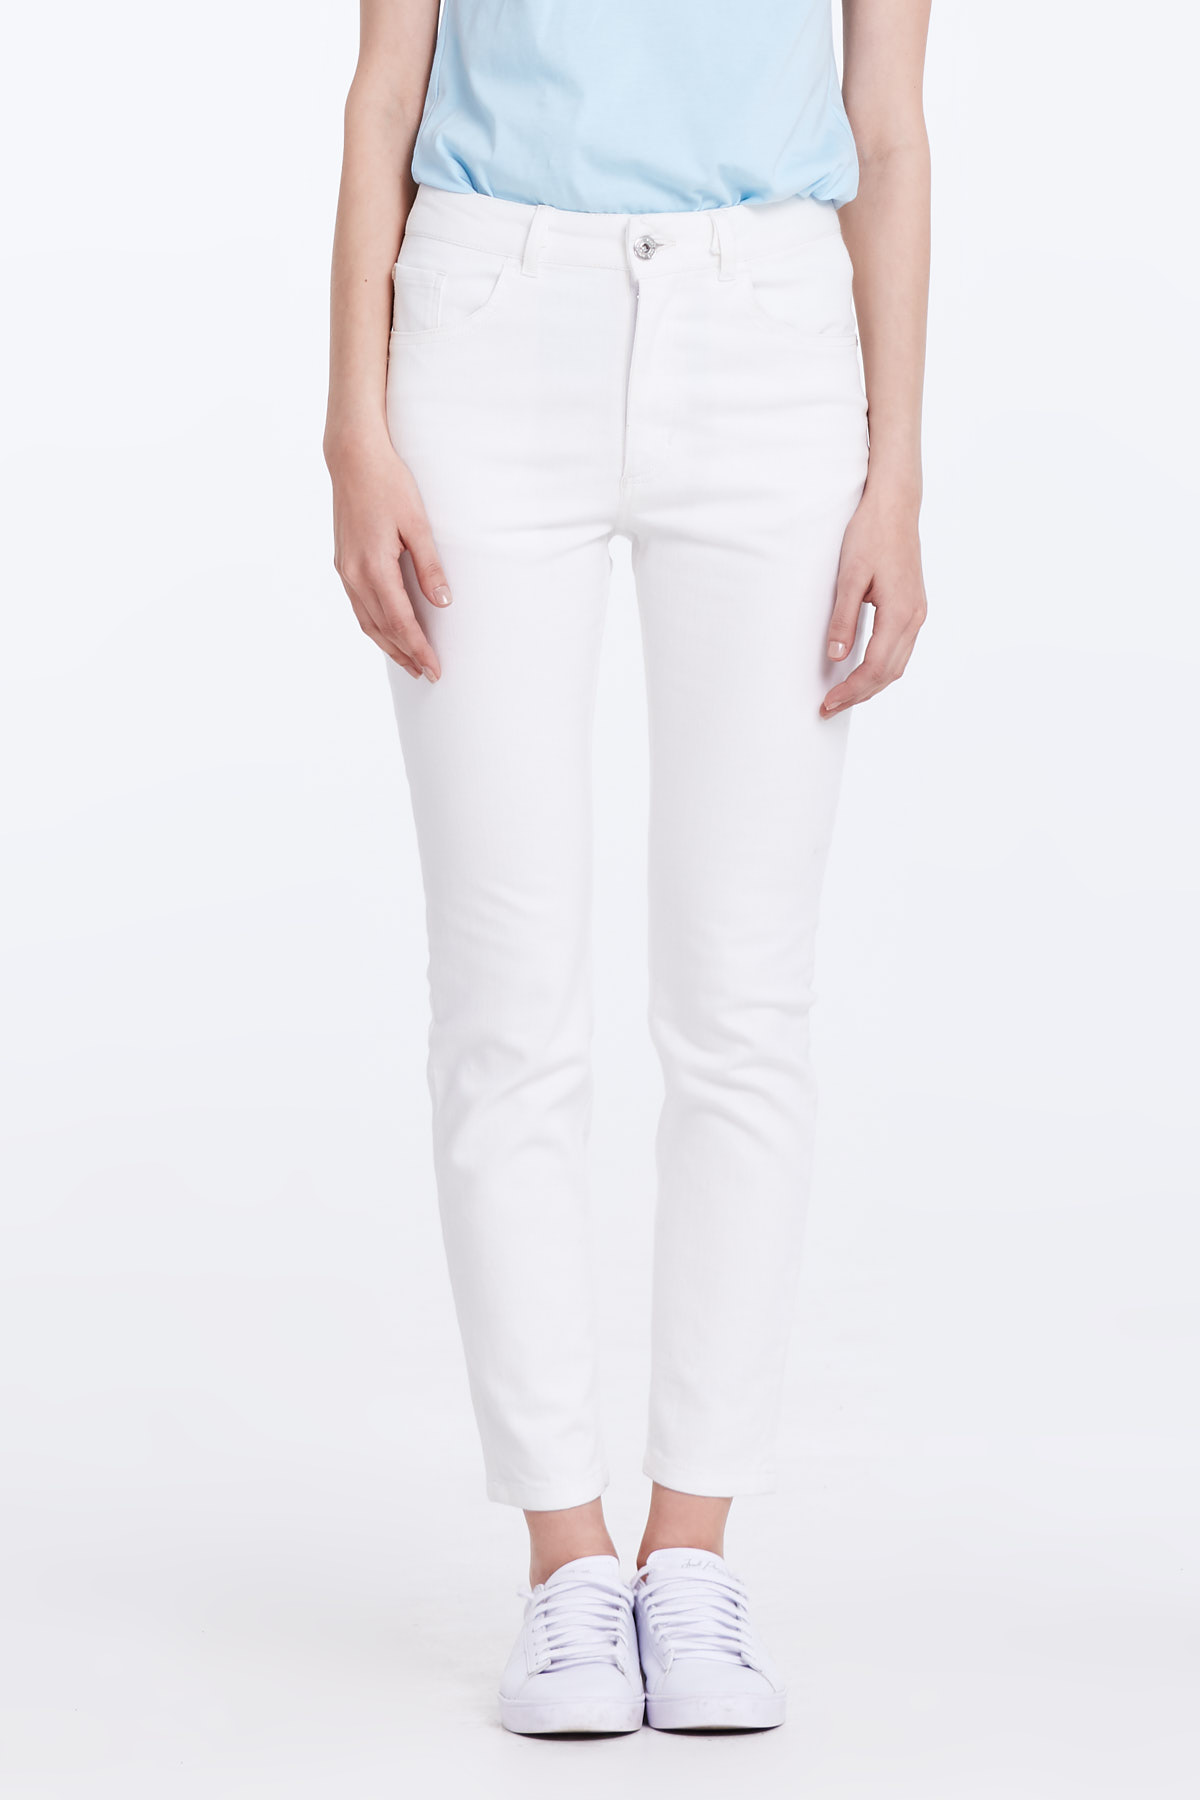 Білі вузькі джинси, фото 1